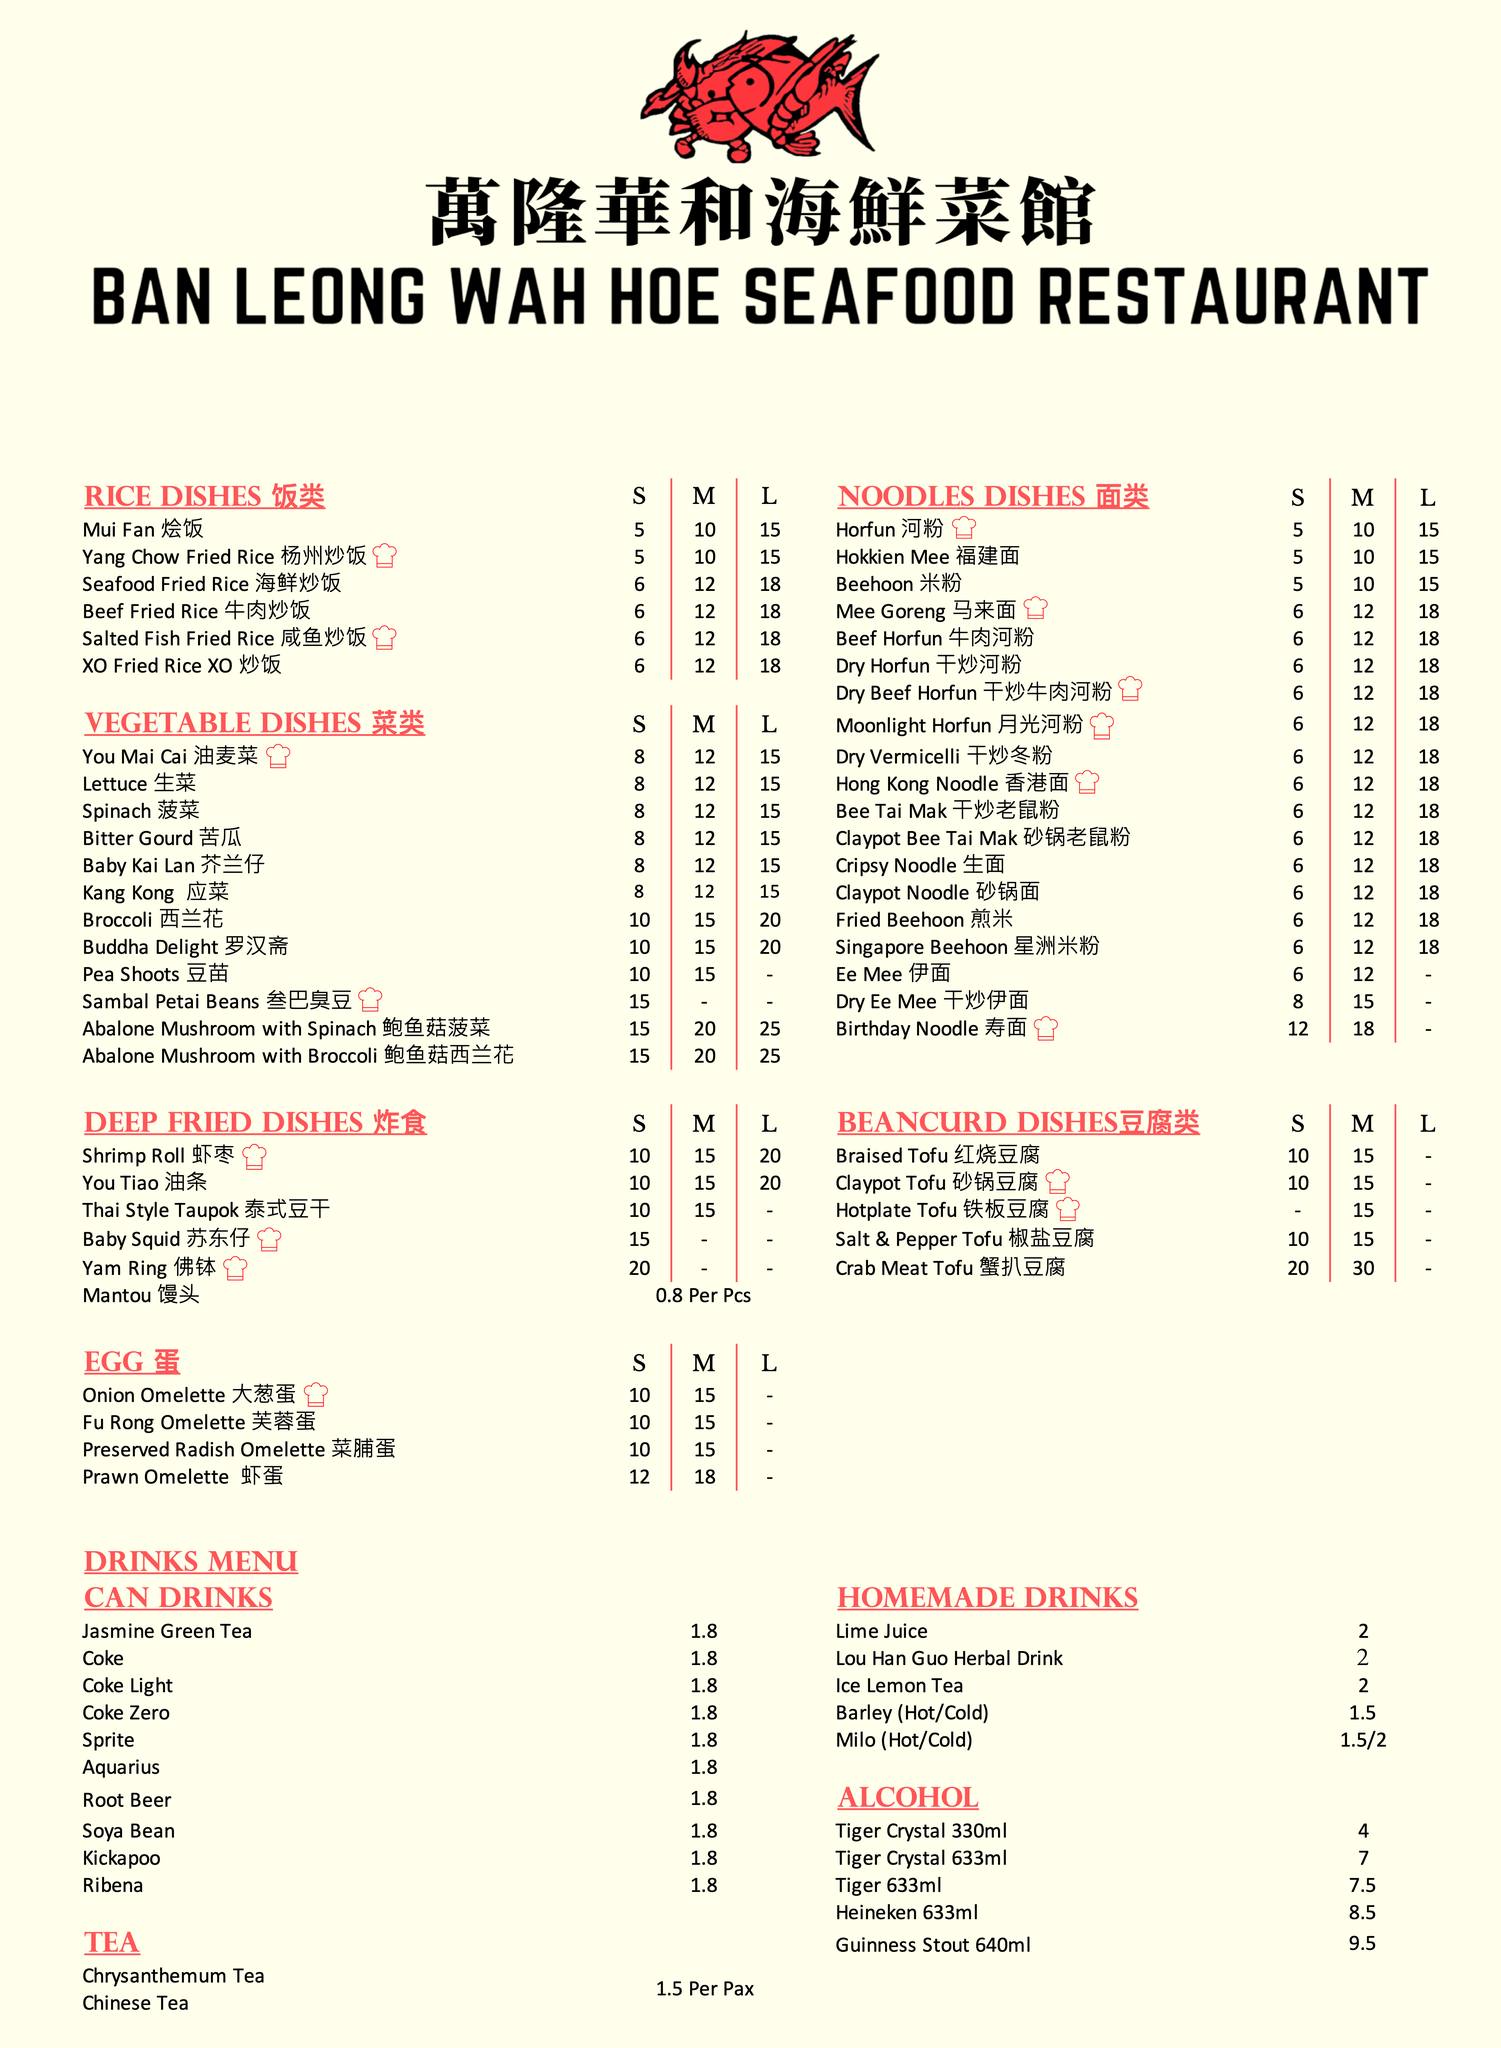 Ban Leong Wah Hoe Singapore rice, noodles, deep, egg Menu & Price List 2022